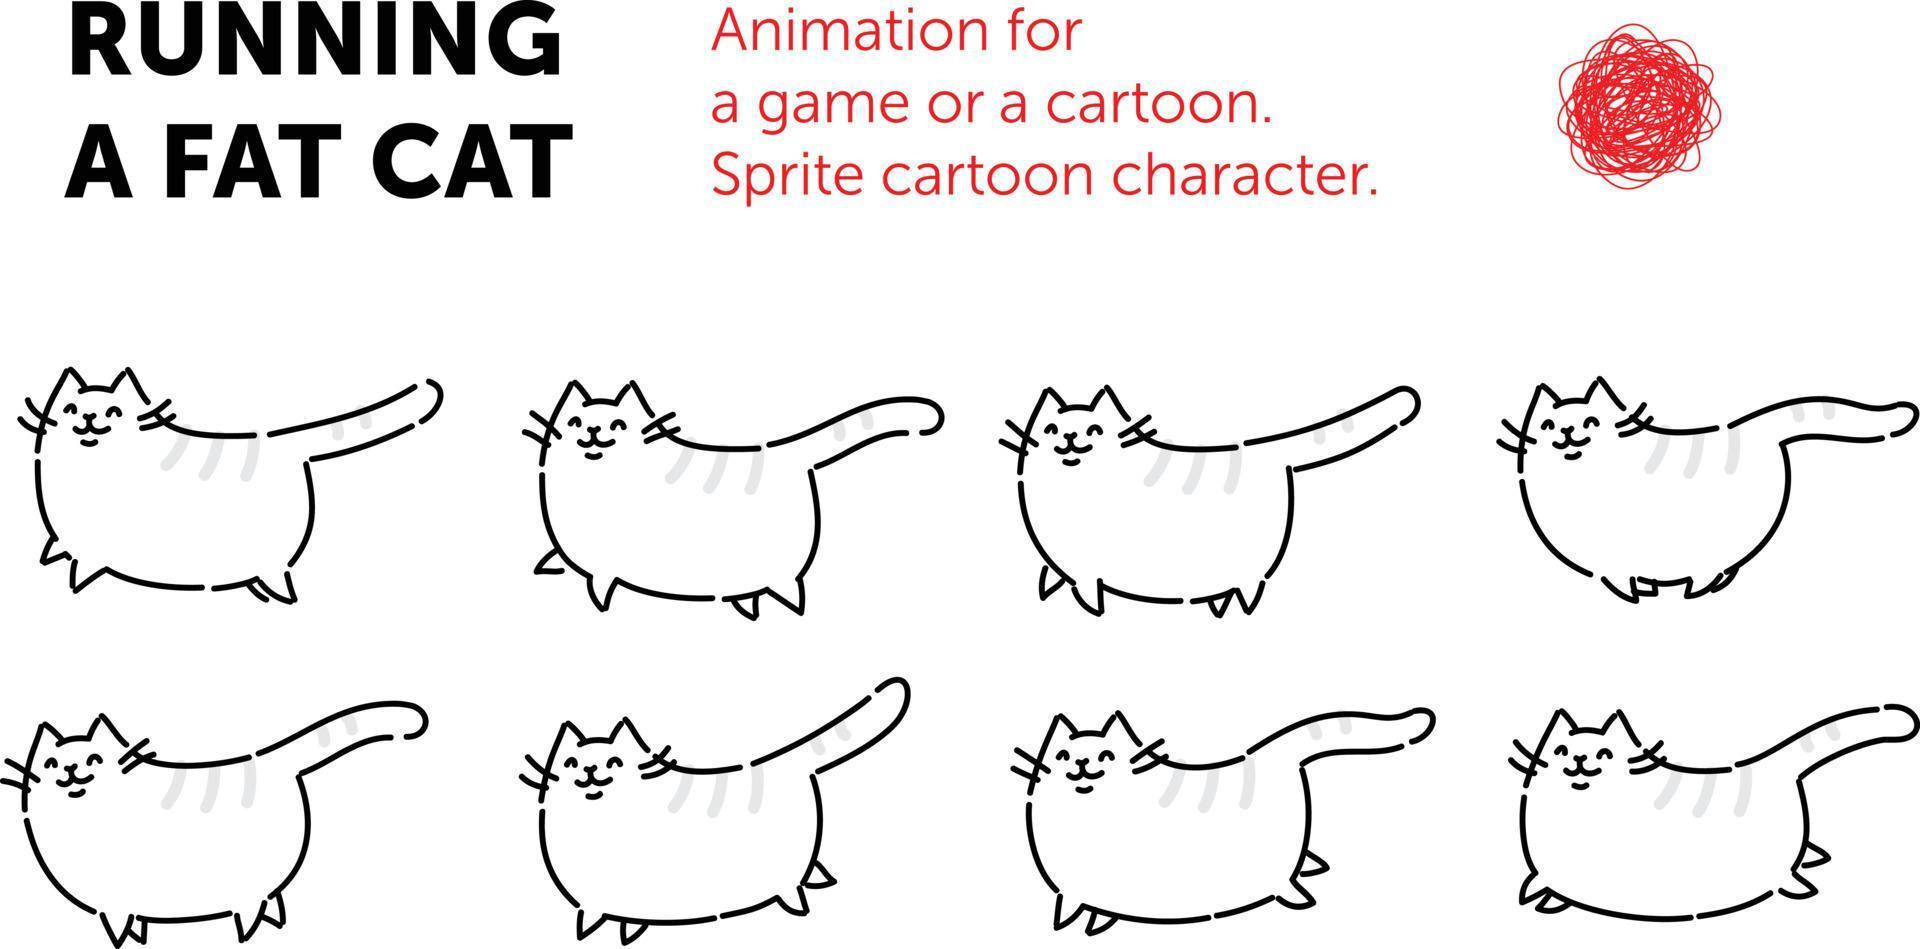 Sprite-Zeichentrickfigur der Katze. reihe von verschiedenen posen des charakters. die Schleifenanimation der Katze. Animation für ein Spiel oder einen Zeichentrickfilm. eine flache Abbildung auf einem isolierten Hintergrund. vektor